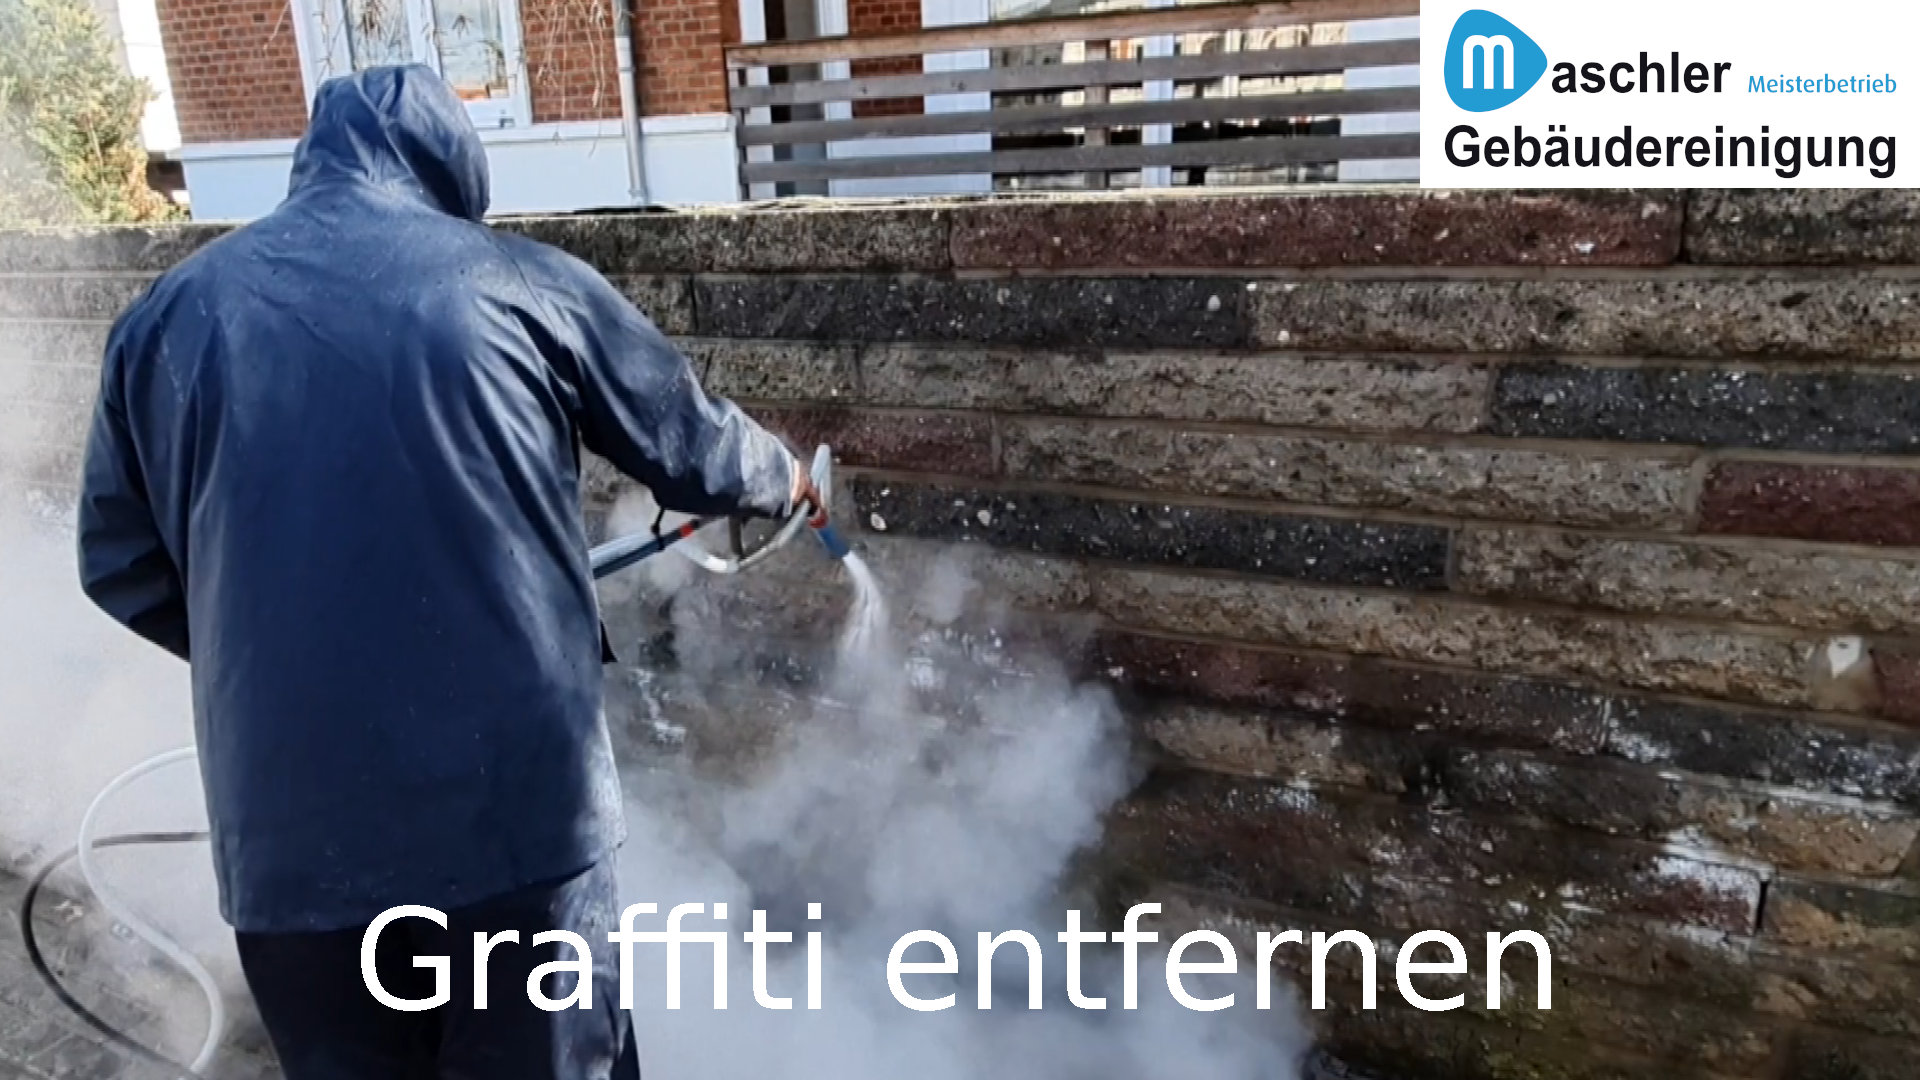 Entfernen von Graffiti - Gebäudereinigung Maschler Schwerin